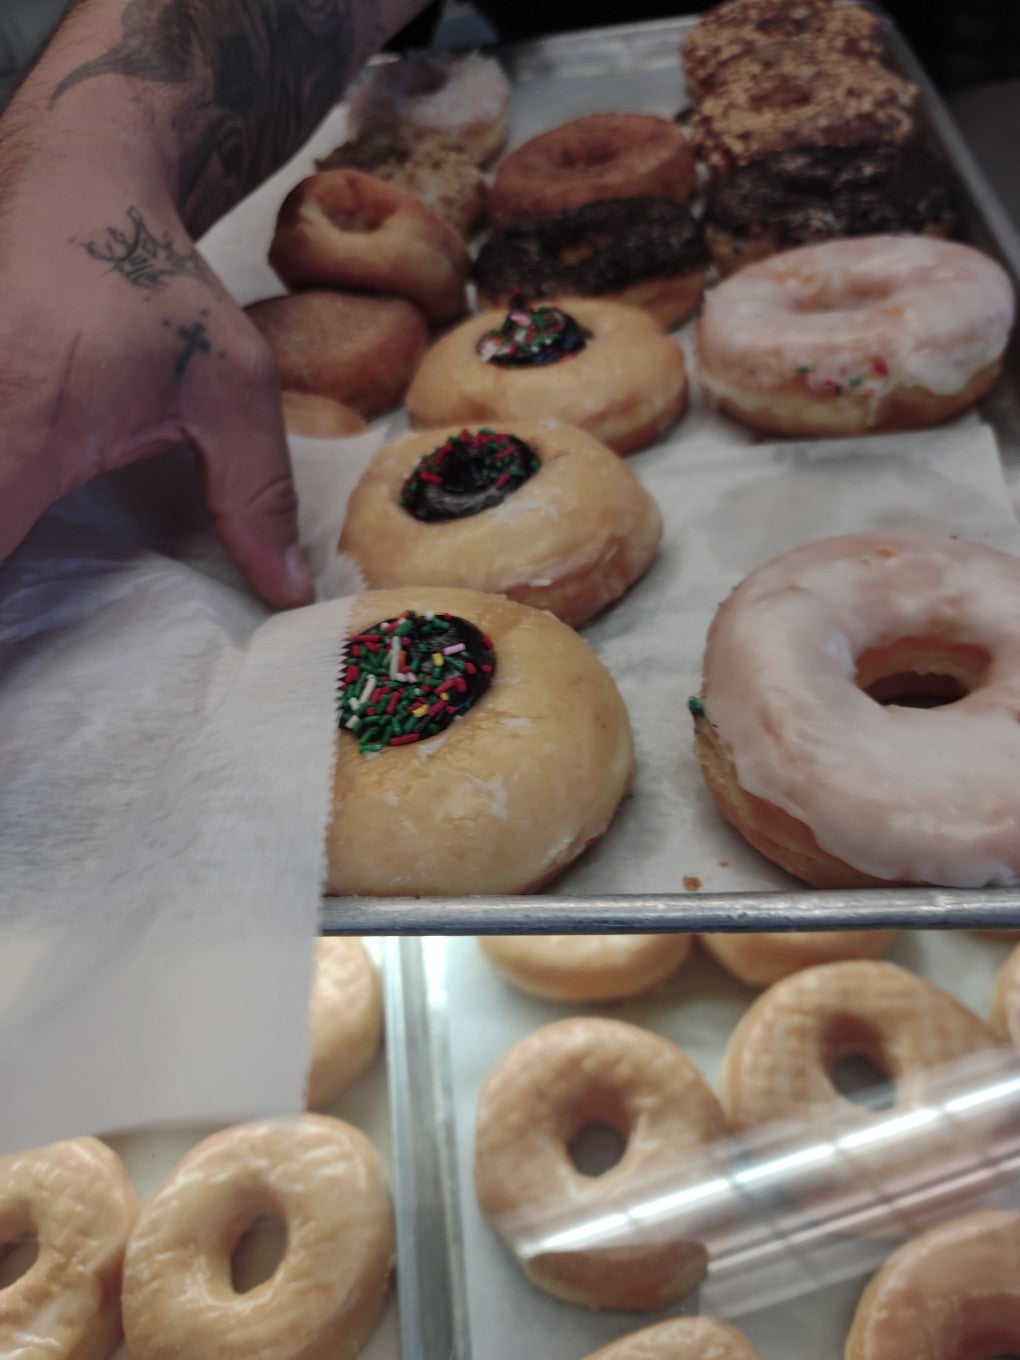 Mr. Donut's & Bakery